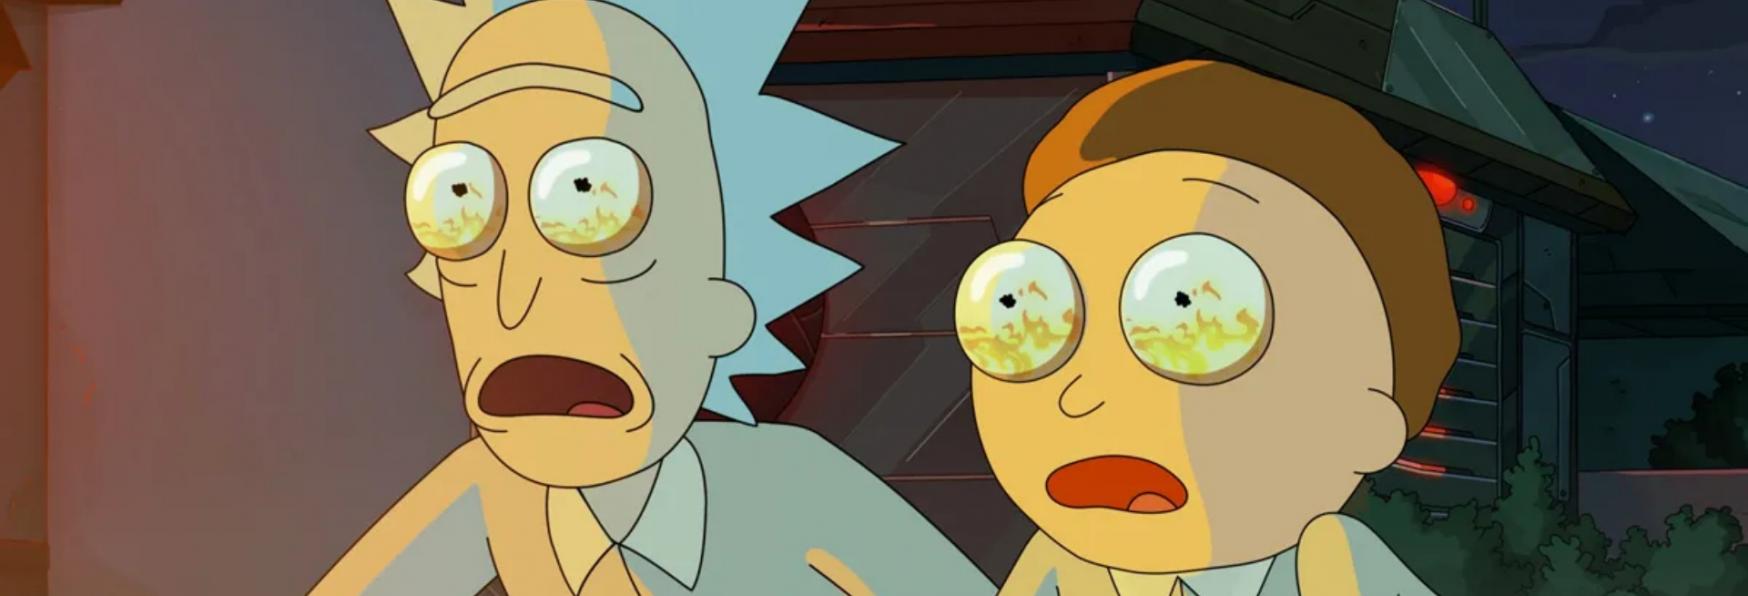 Rick and Morty 6: Posticipata la Data di Uscita. Ecco Quando la nuova Stagione arriverà su Netflix